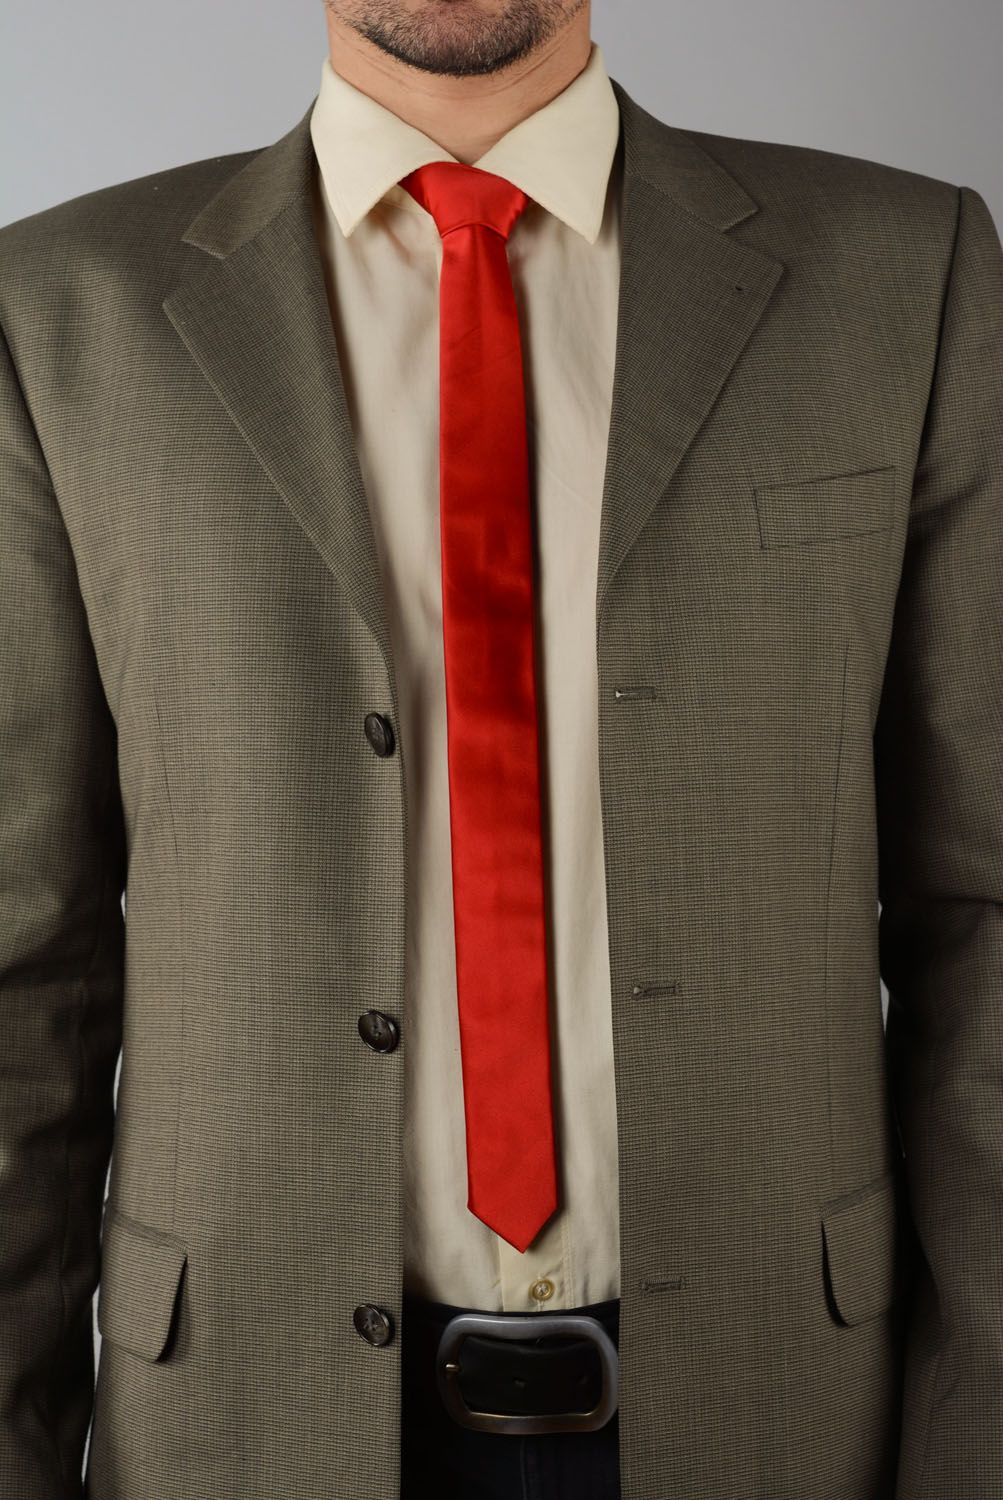 Corbata roja foto 1